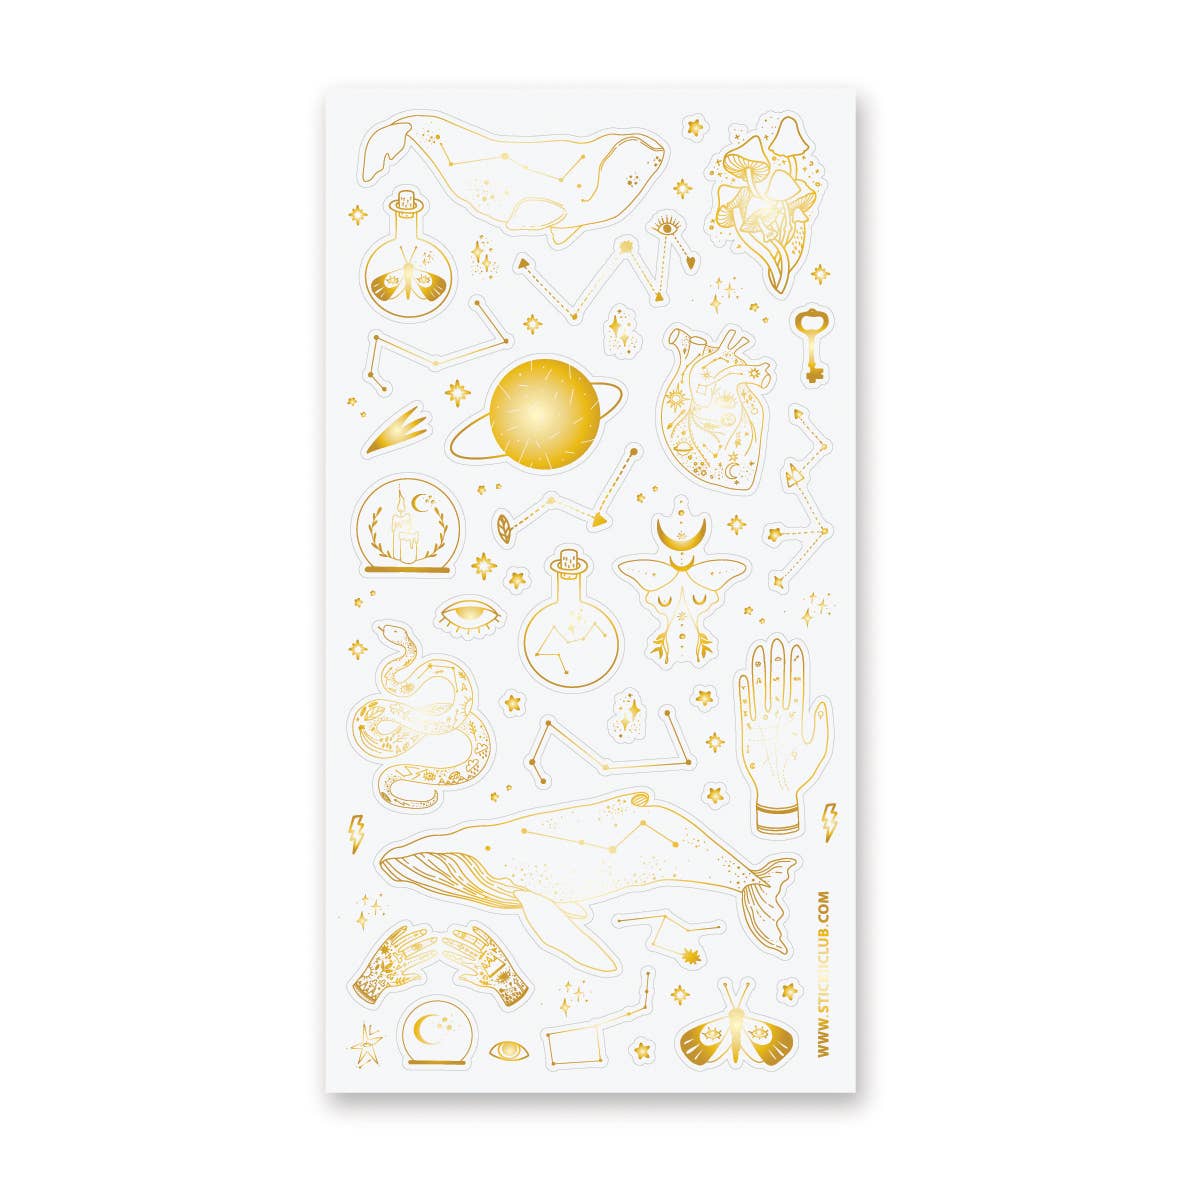 Mystical Constellation Sticker Sheet